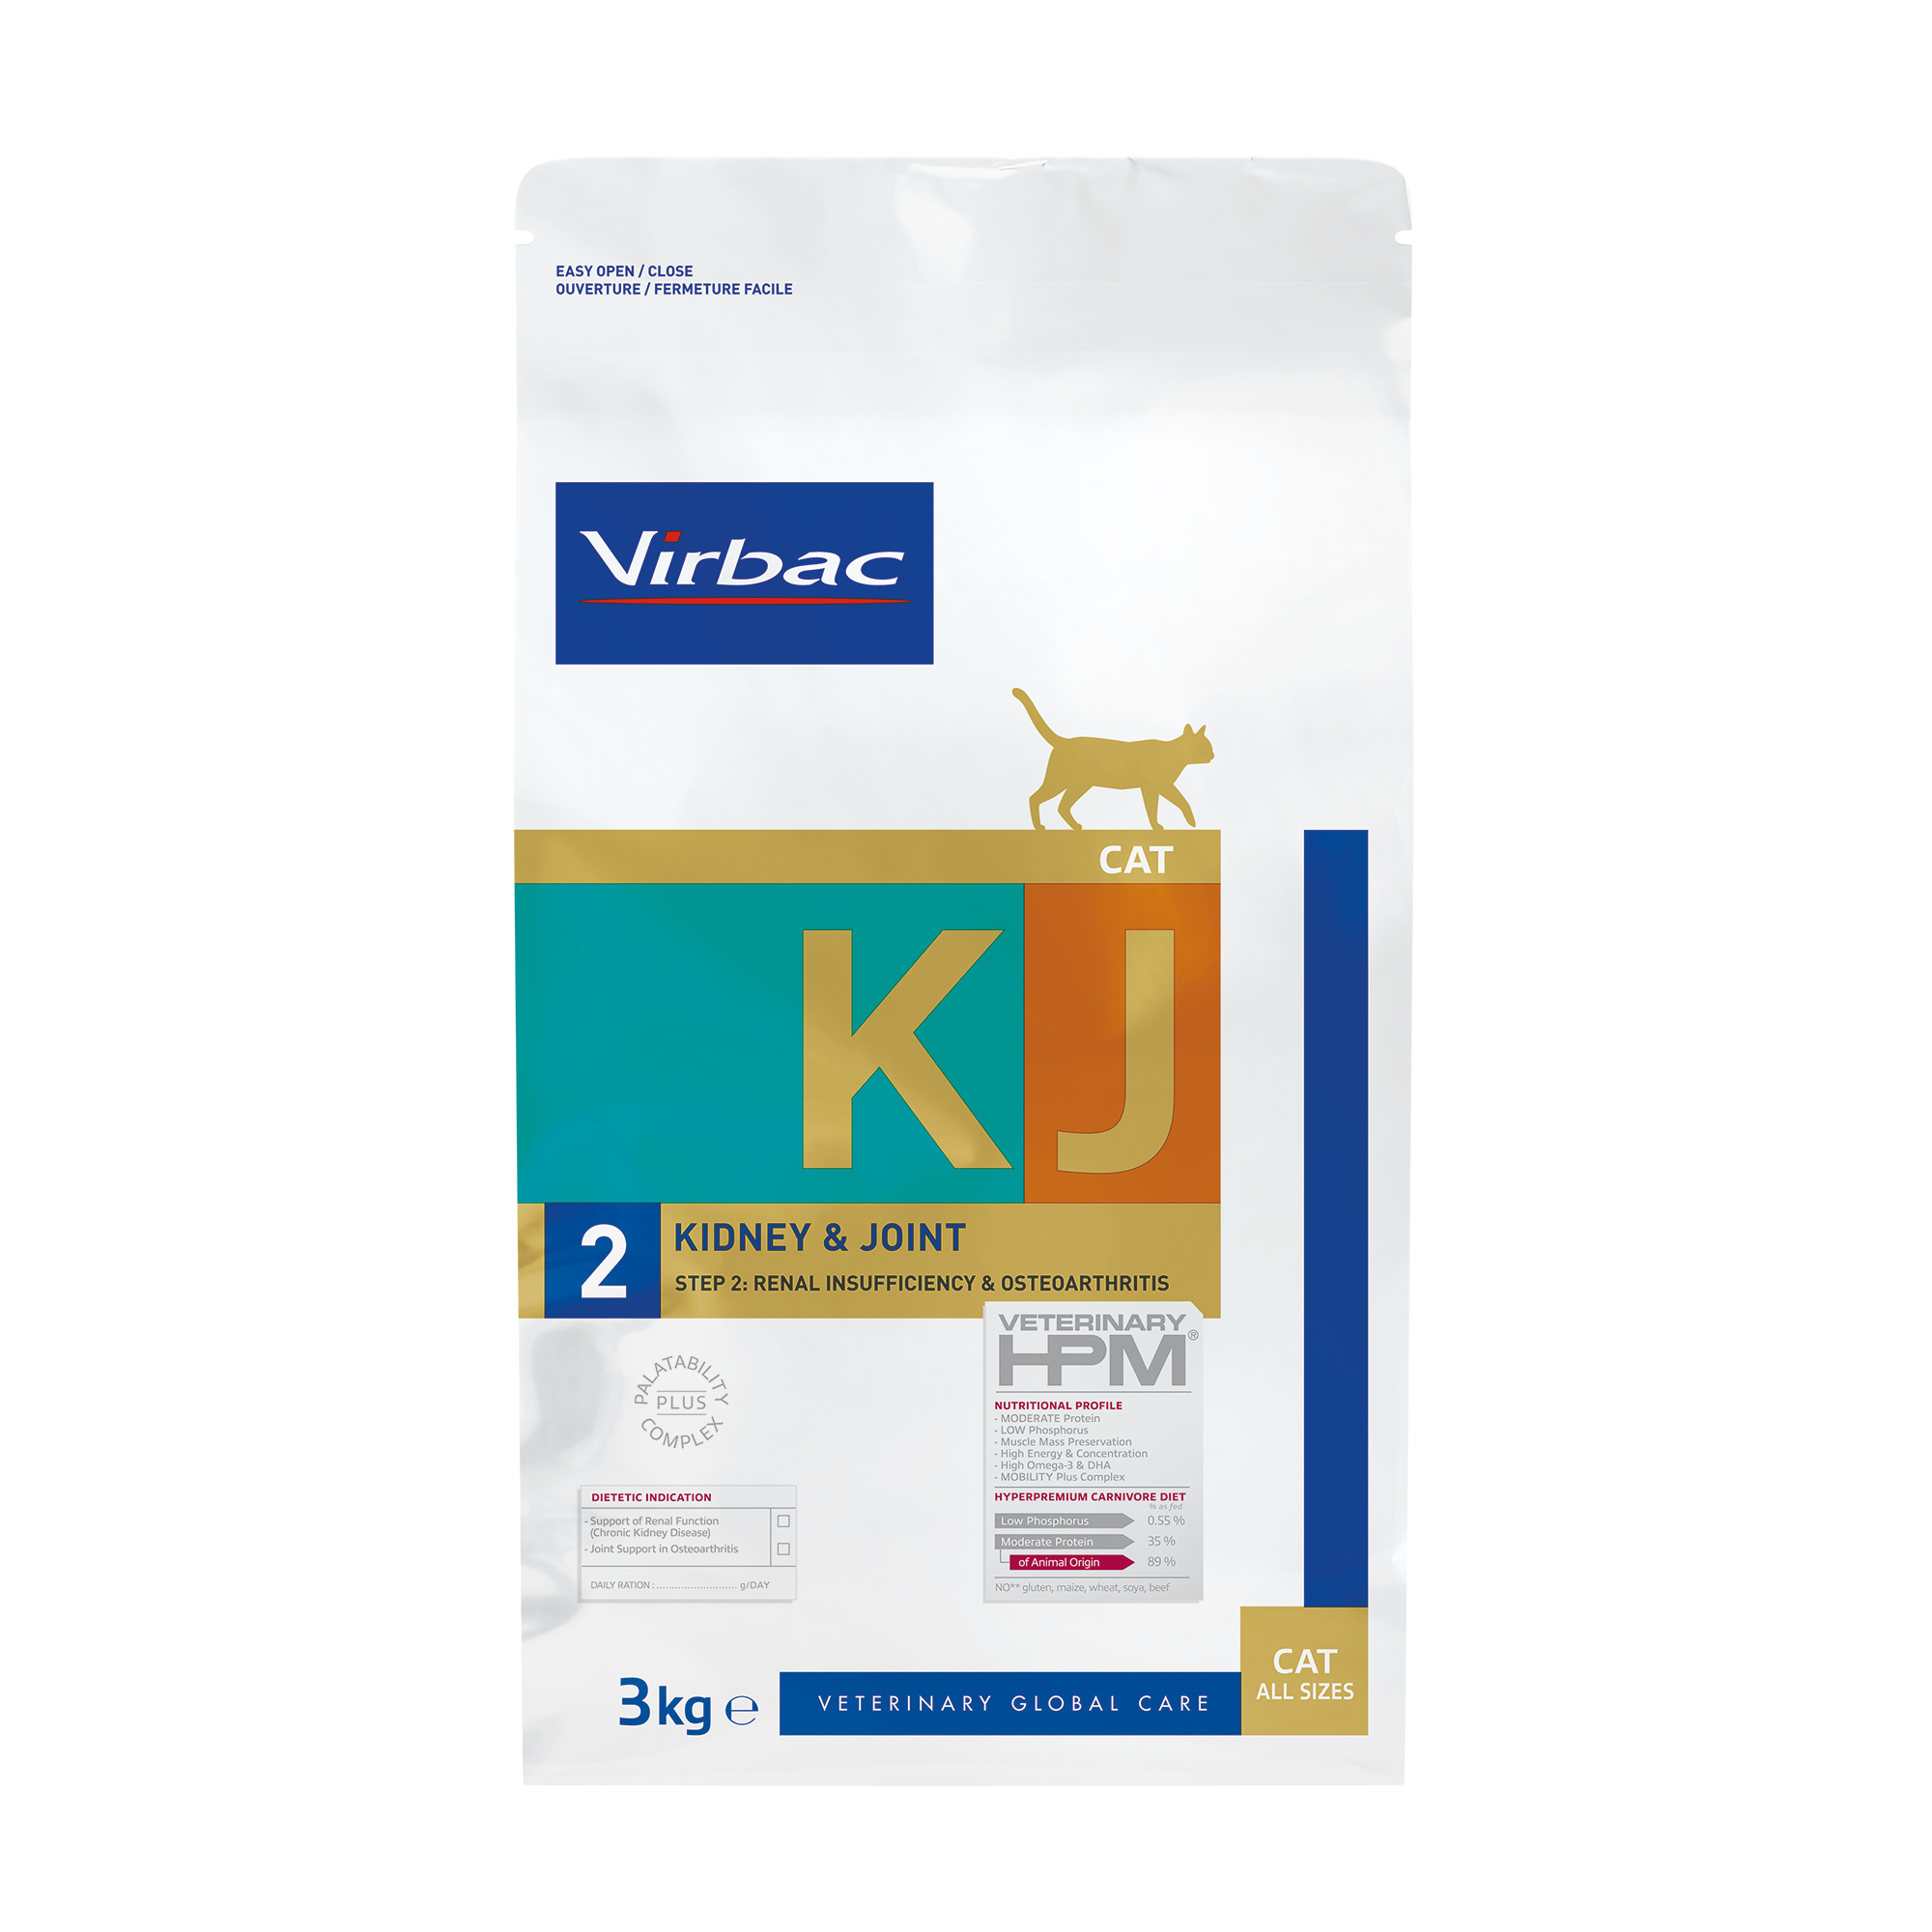 Virbac Veterinary HPM KJ2 - Kidney & Joint Support für ausgewachsene Katzen